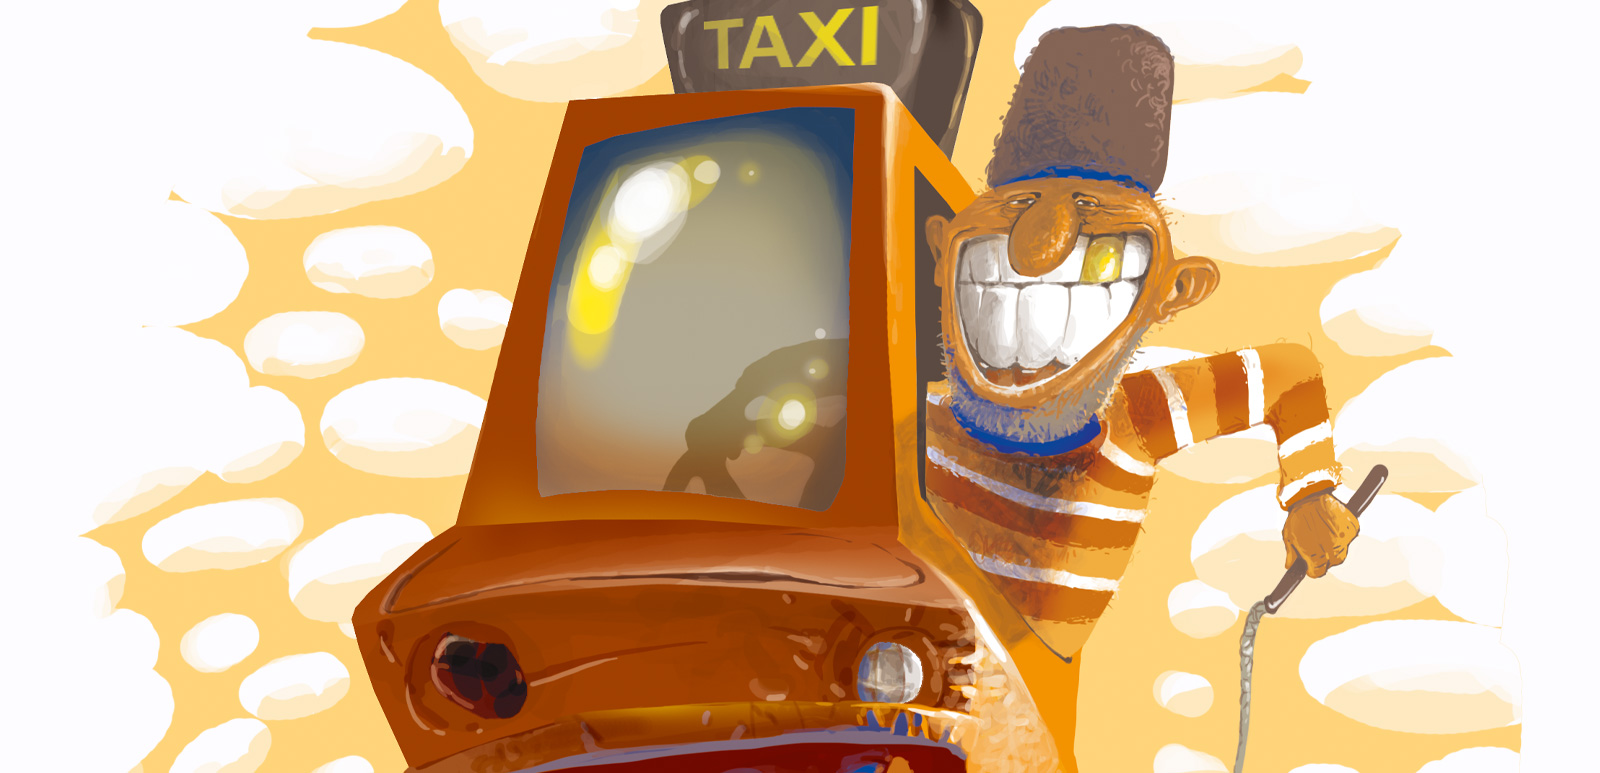 Шоферские байки: про шустрого таксиста, «братьев по разуму» и то, что бесит